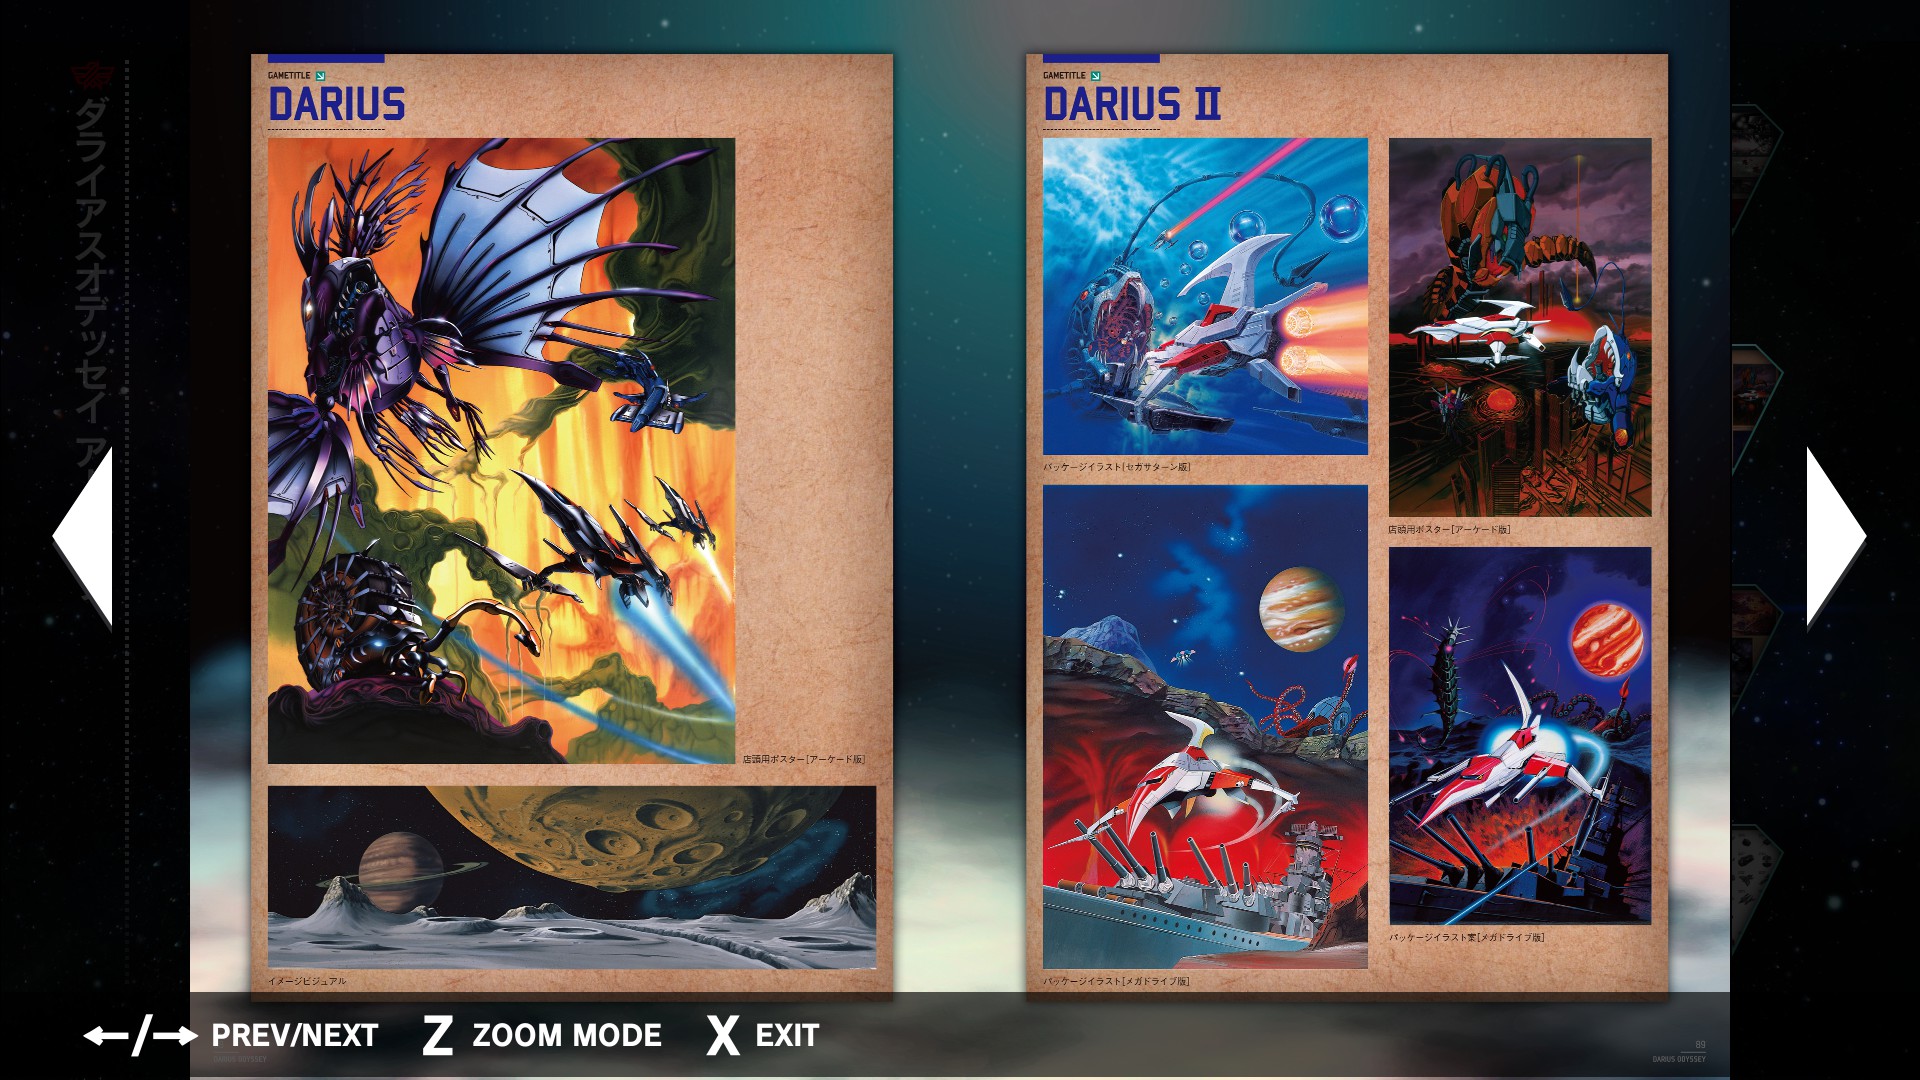 DARIUSBURST Chronicle Saviours - Darius Odyssey Digital Guidebook screenshot